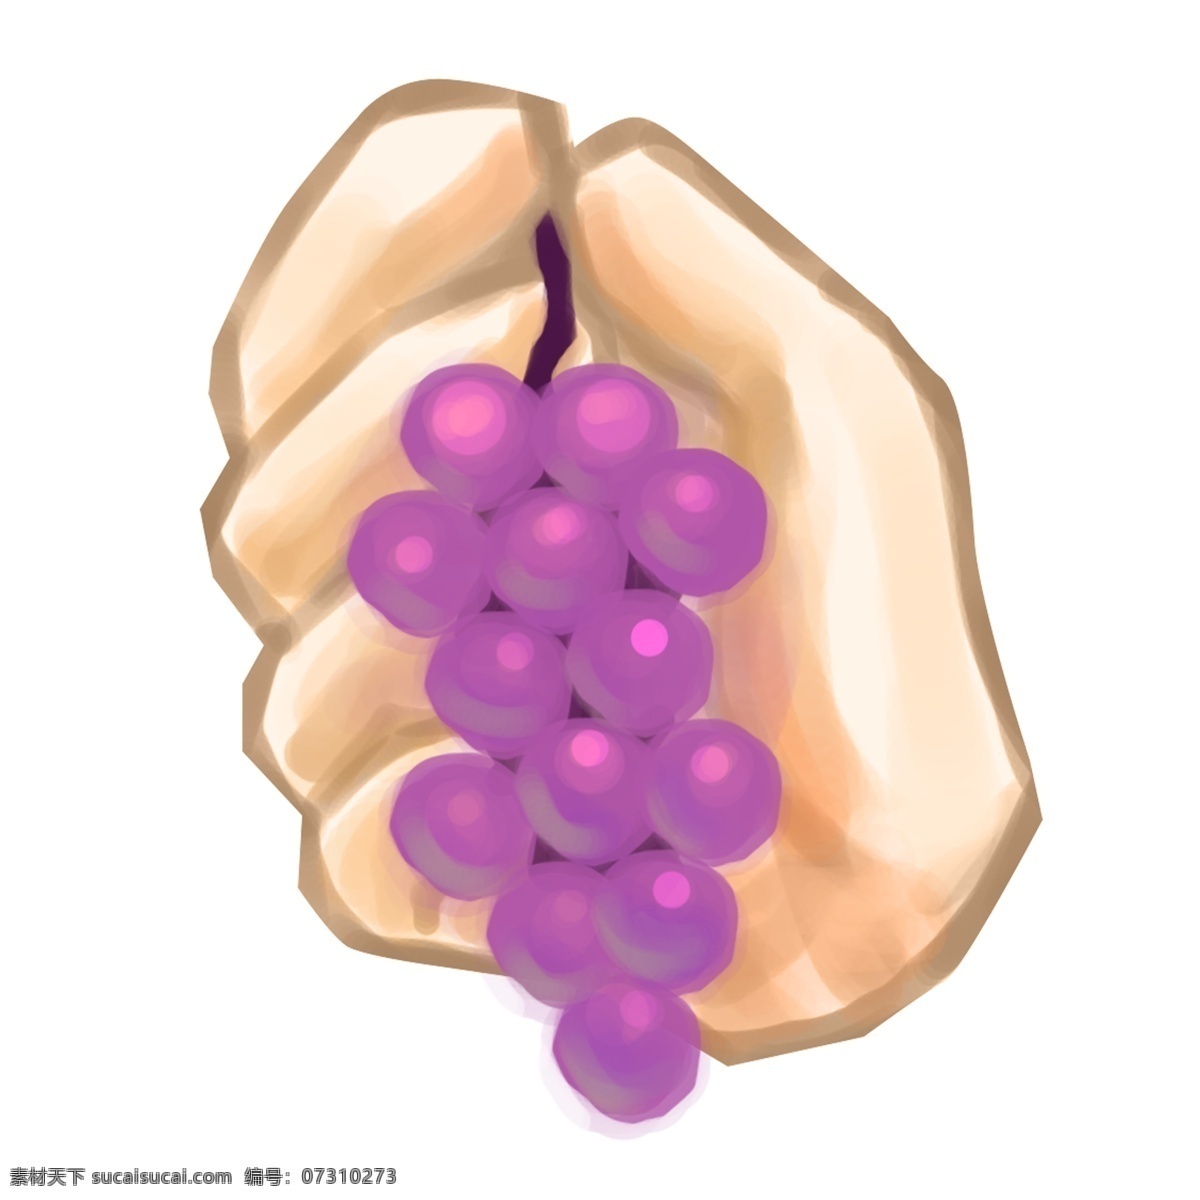 手 葡萄 卡通 手势 手持葡萄 紫色的葡萄 水果 手势插画 卡通手势插画 手拿葡萄 黄色的手掌